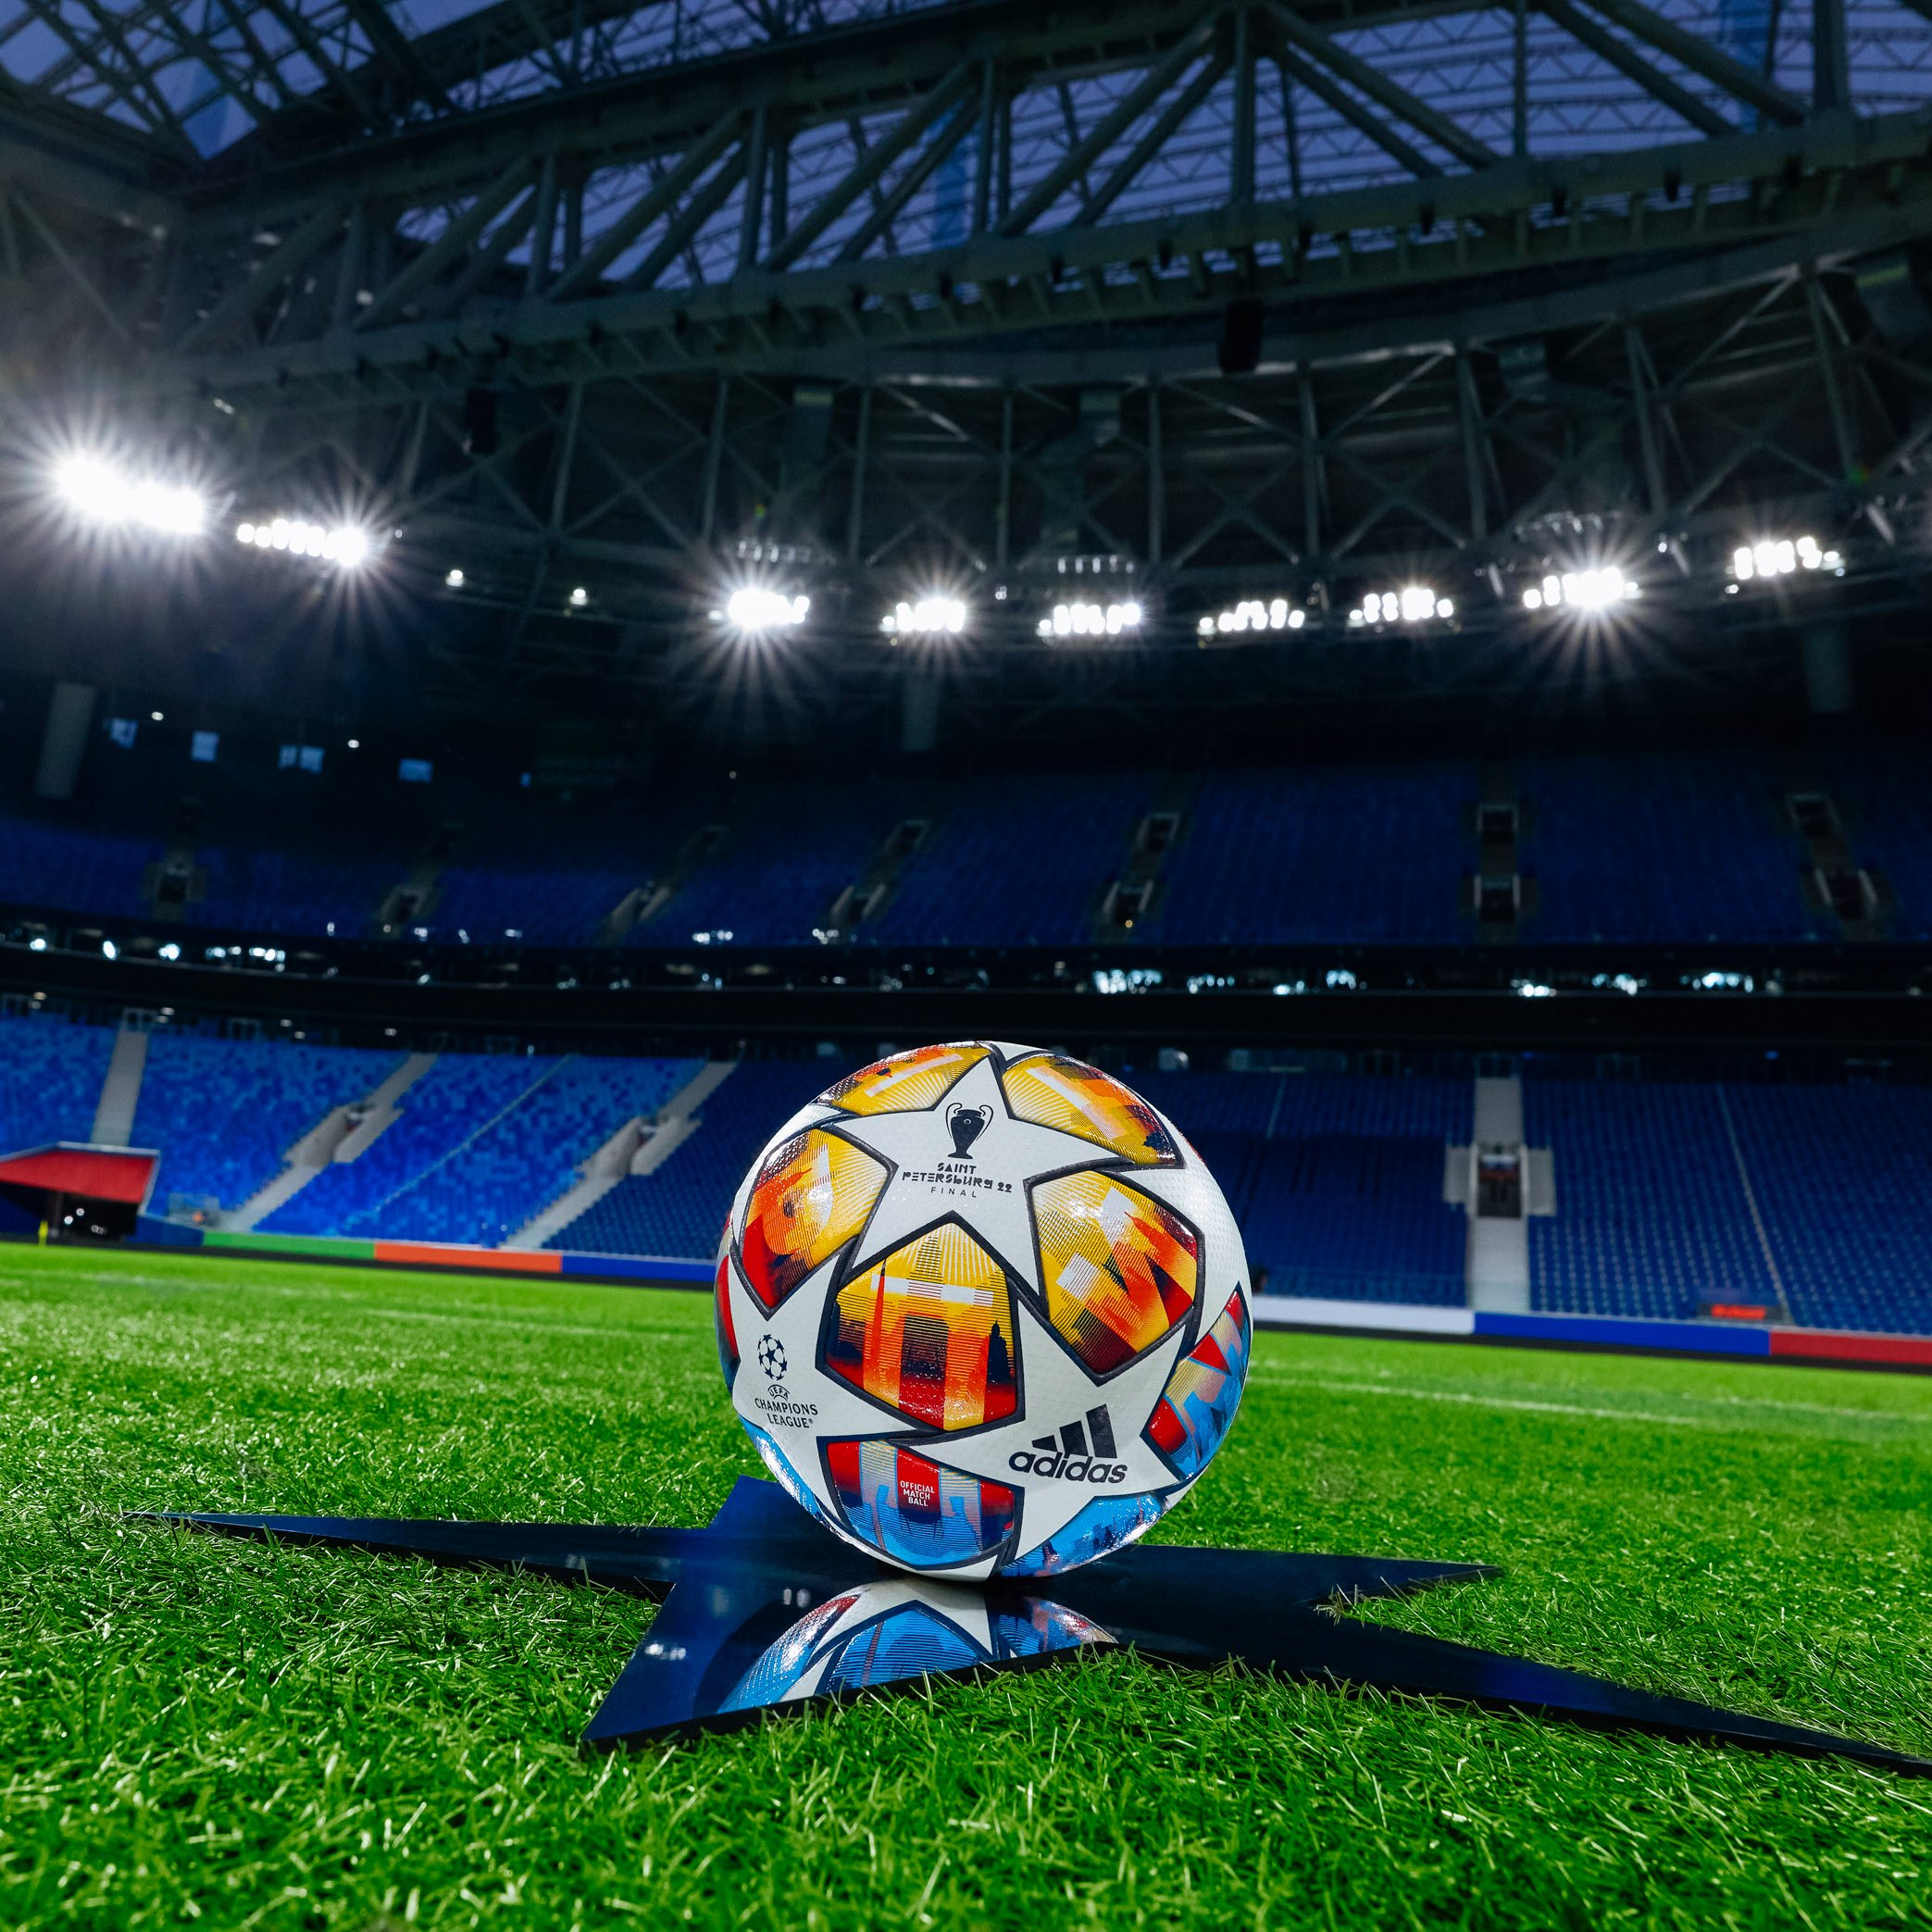 Ballon de foot ligue des champions 2021/2022 Adidas UEFA